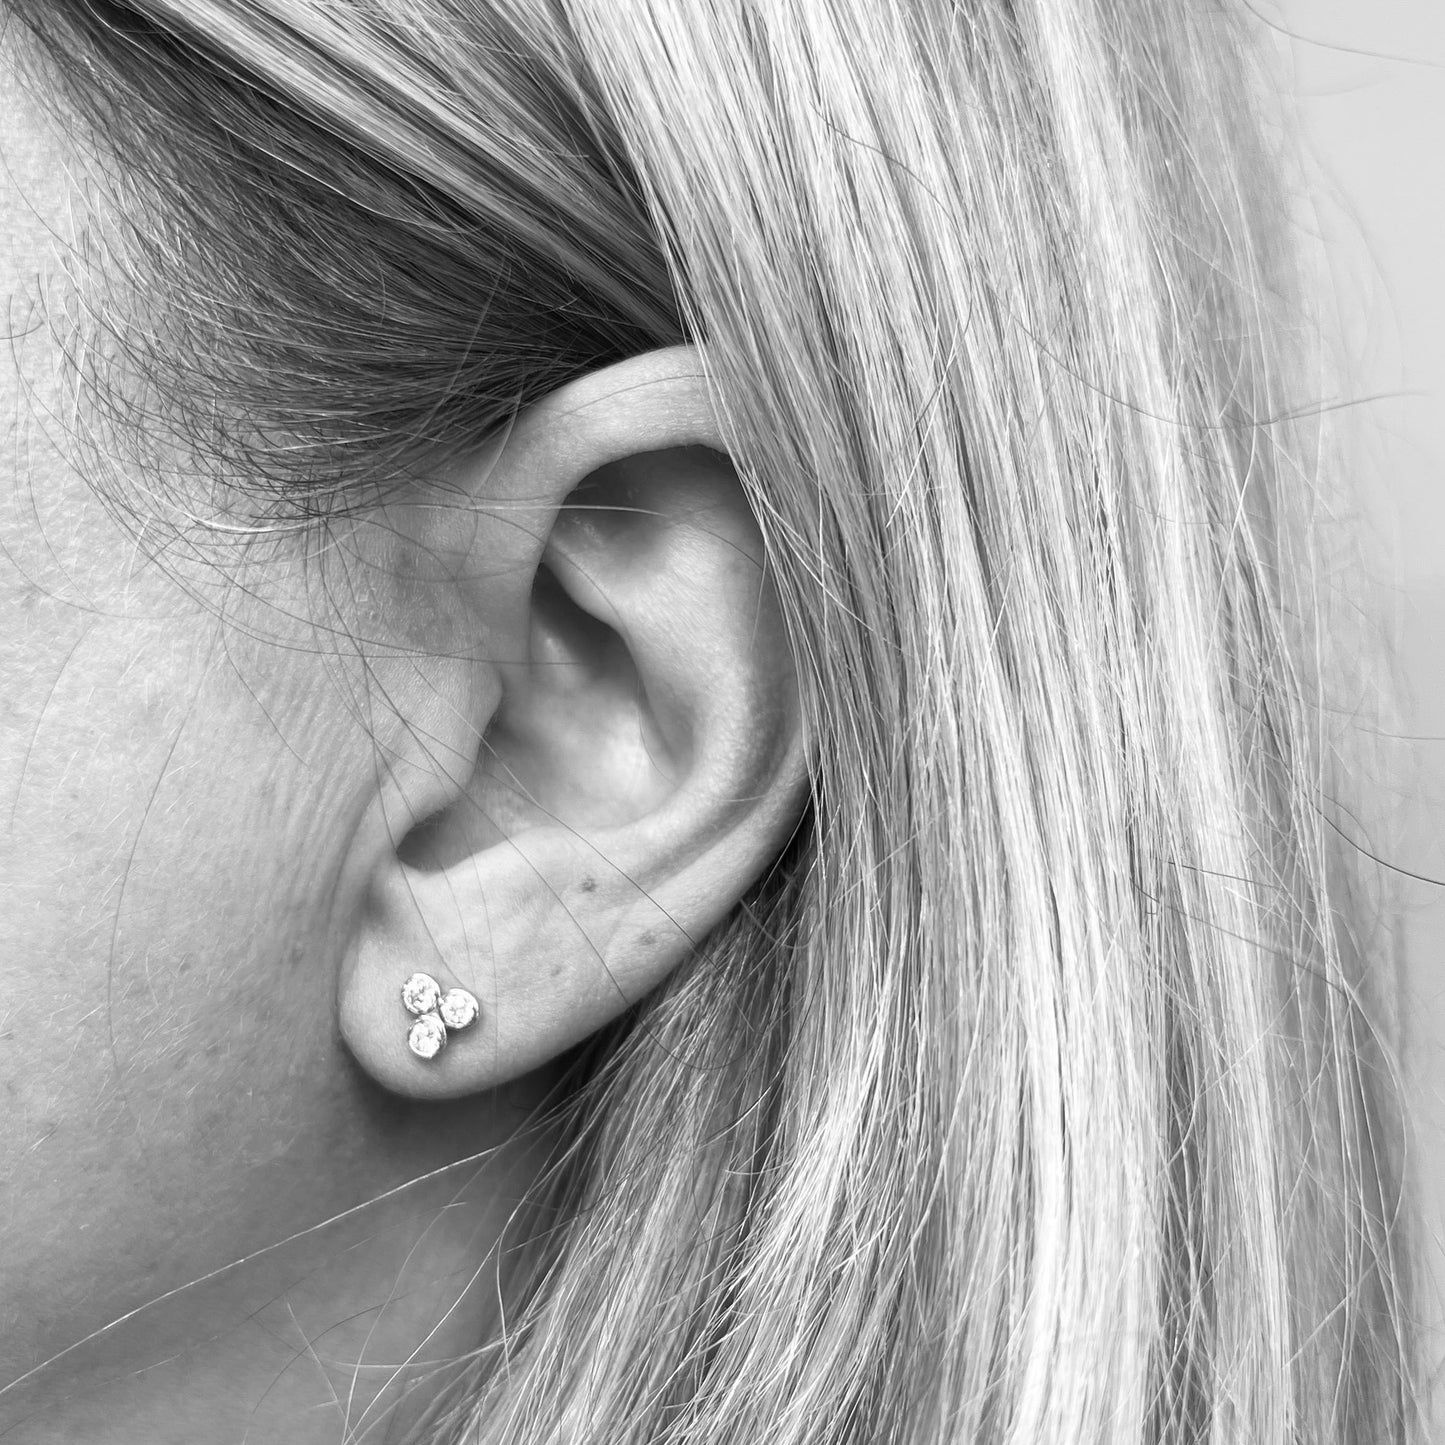 14kw Diamond Clover Earrings